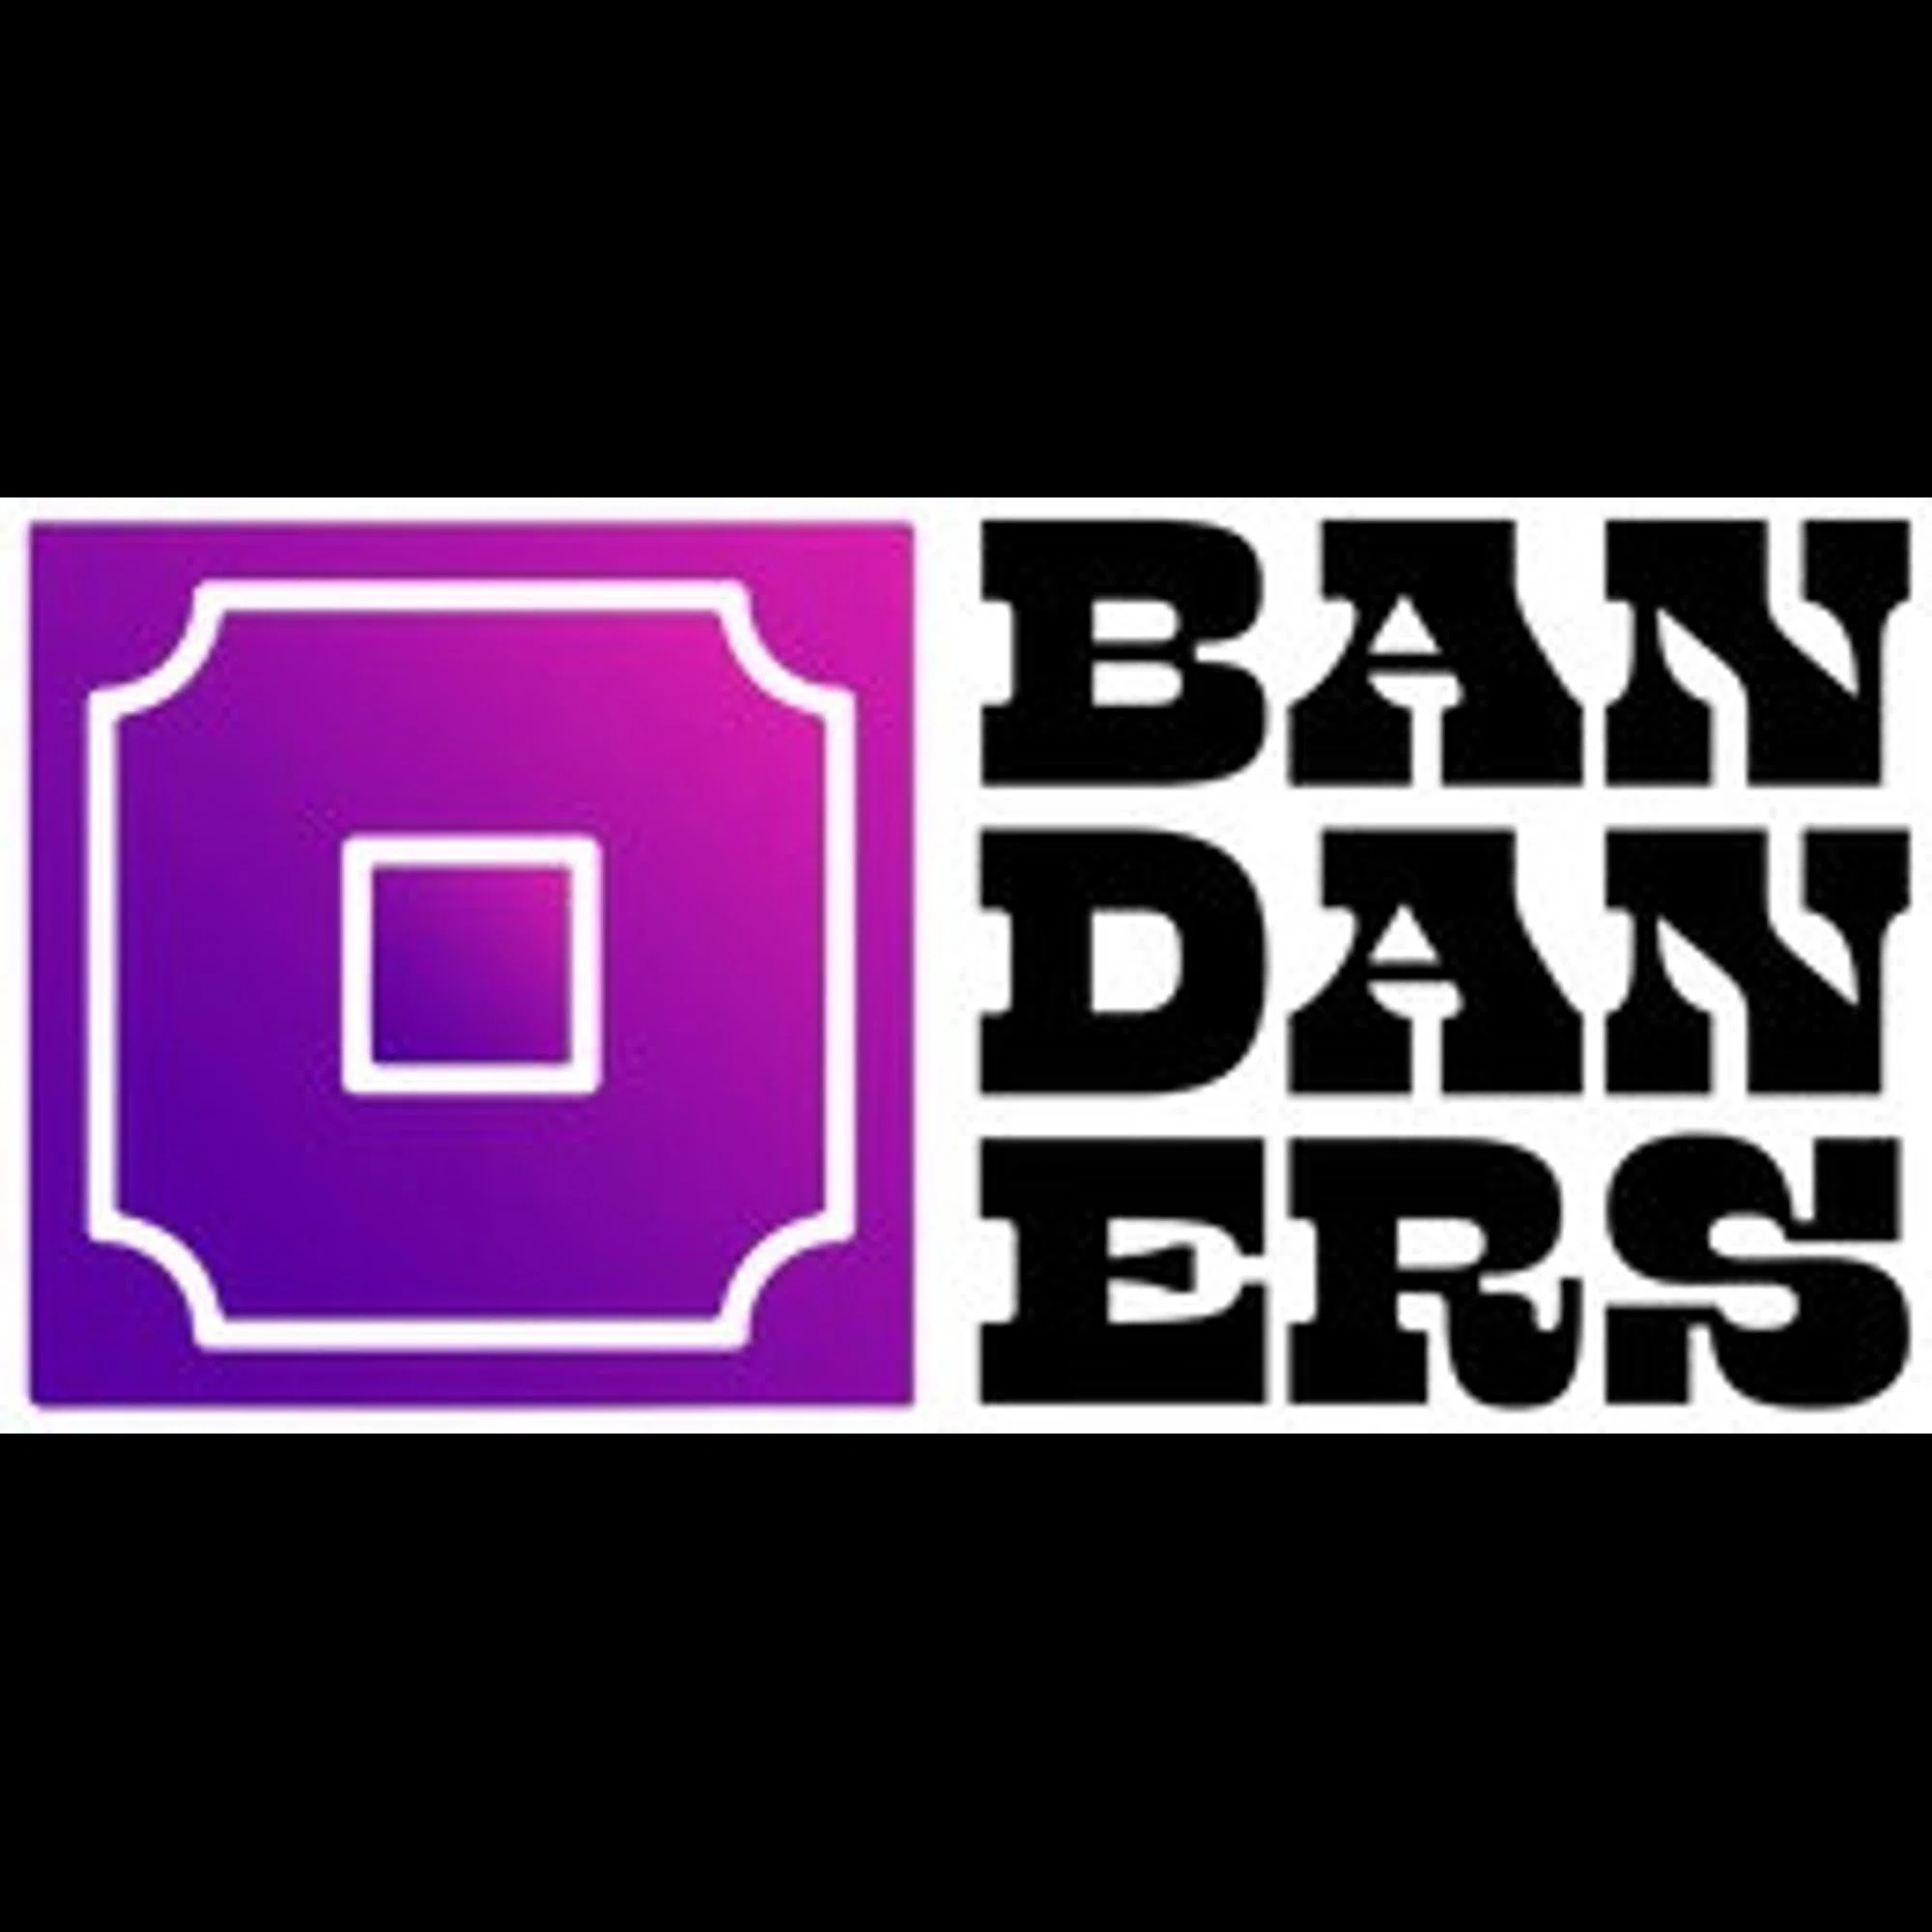 bandaners.com logo